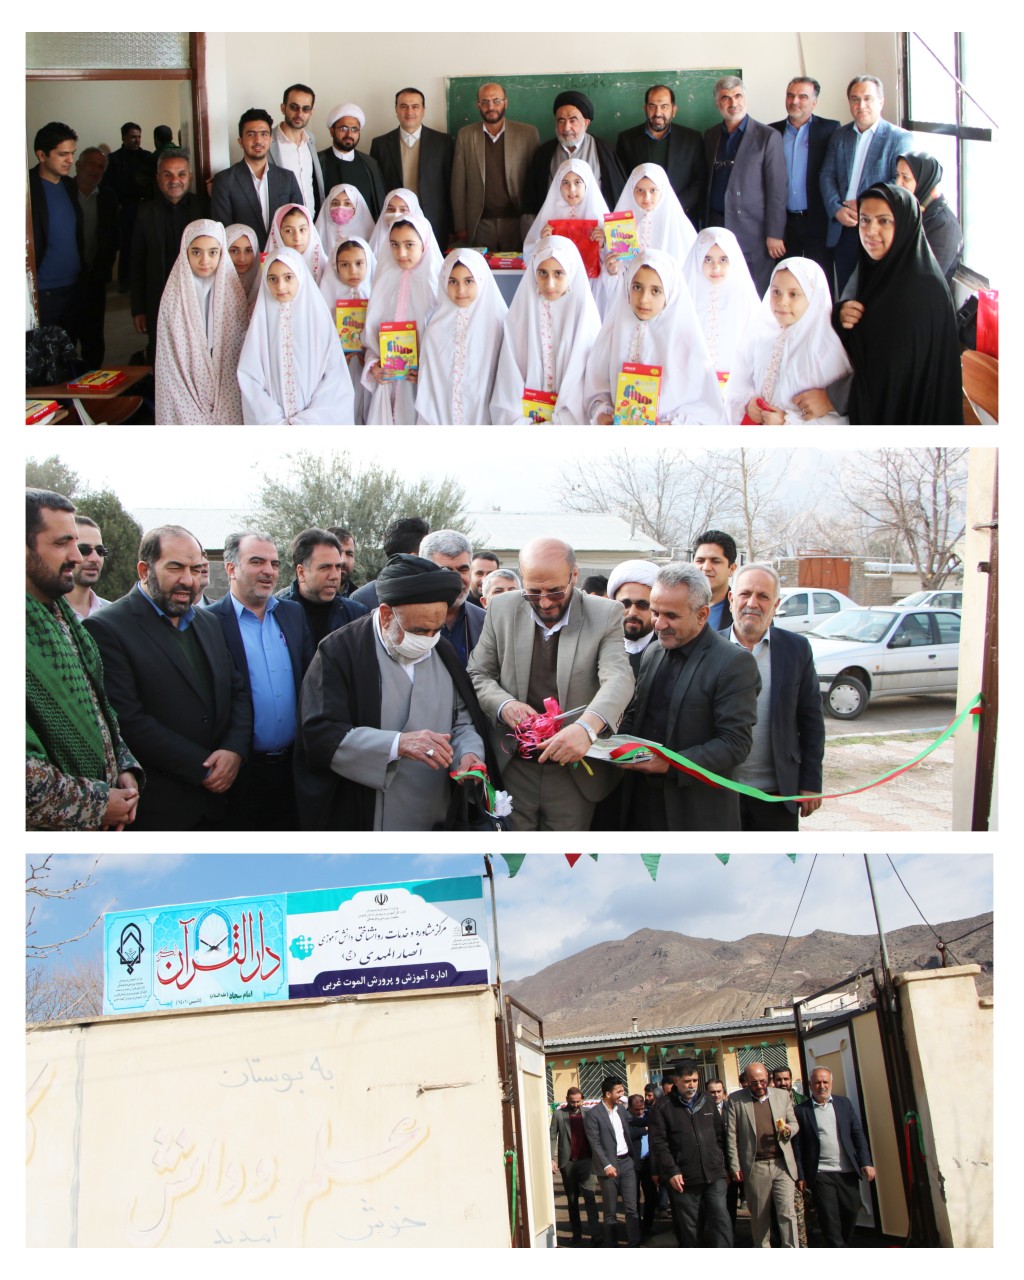  افتتاح مرکز دارالقرآن و مرکز مشاوره شهر رازمیان با حضور مدیرکل آموزش و پرورش